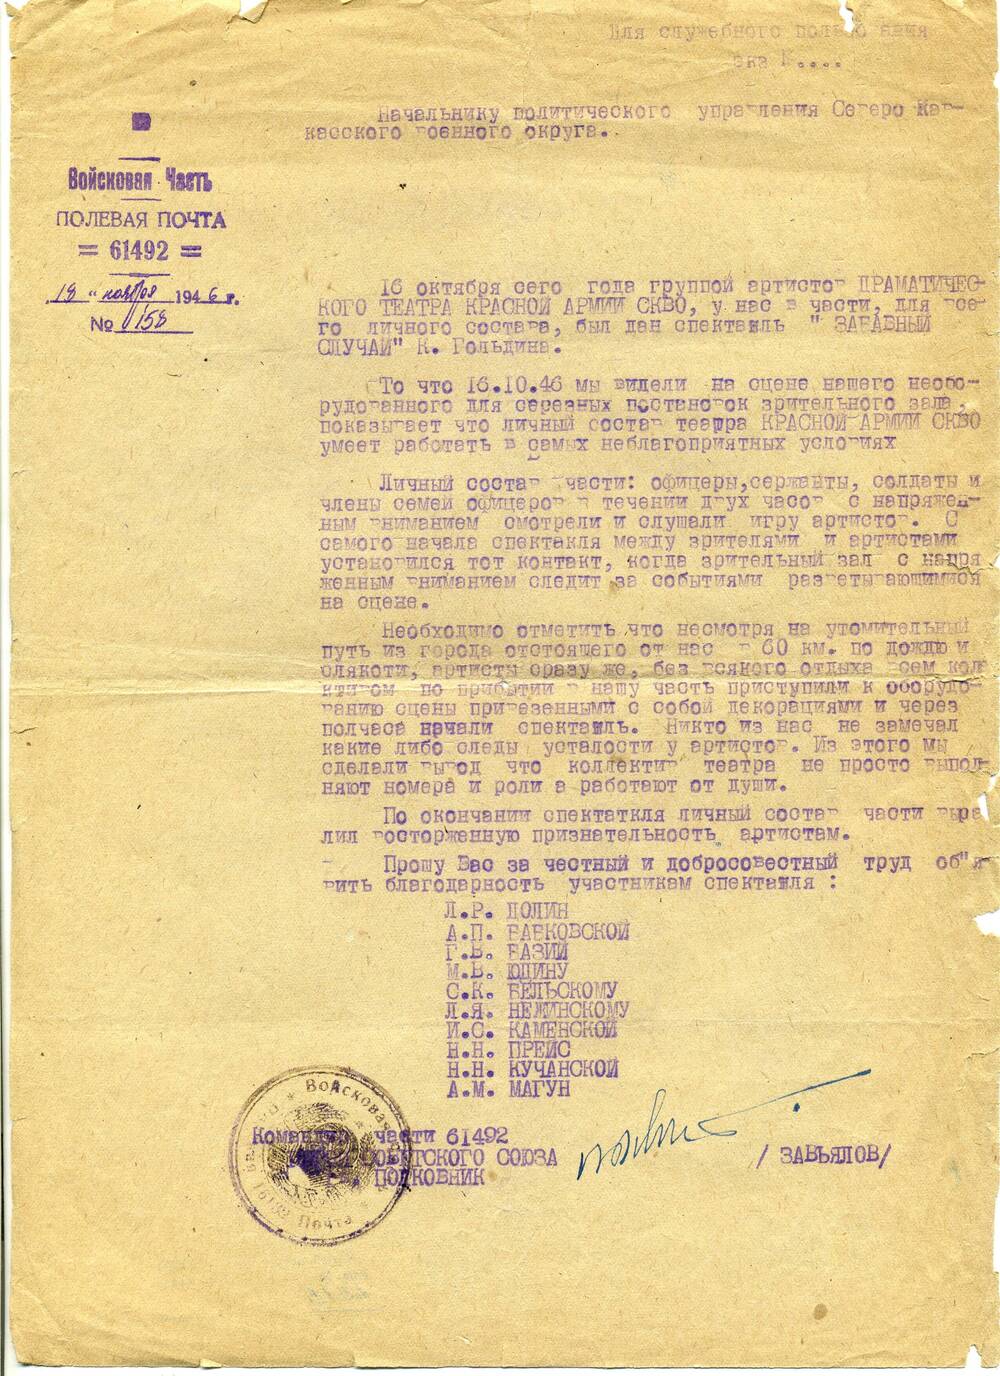 Начальнику Политуправления СКВО от 18 ноября 1946 г. № 158 отзыв о спектакле Забавный случай в в/ч 61492